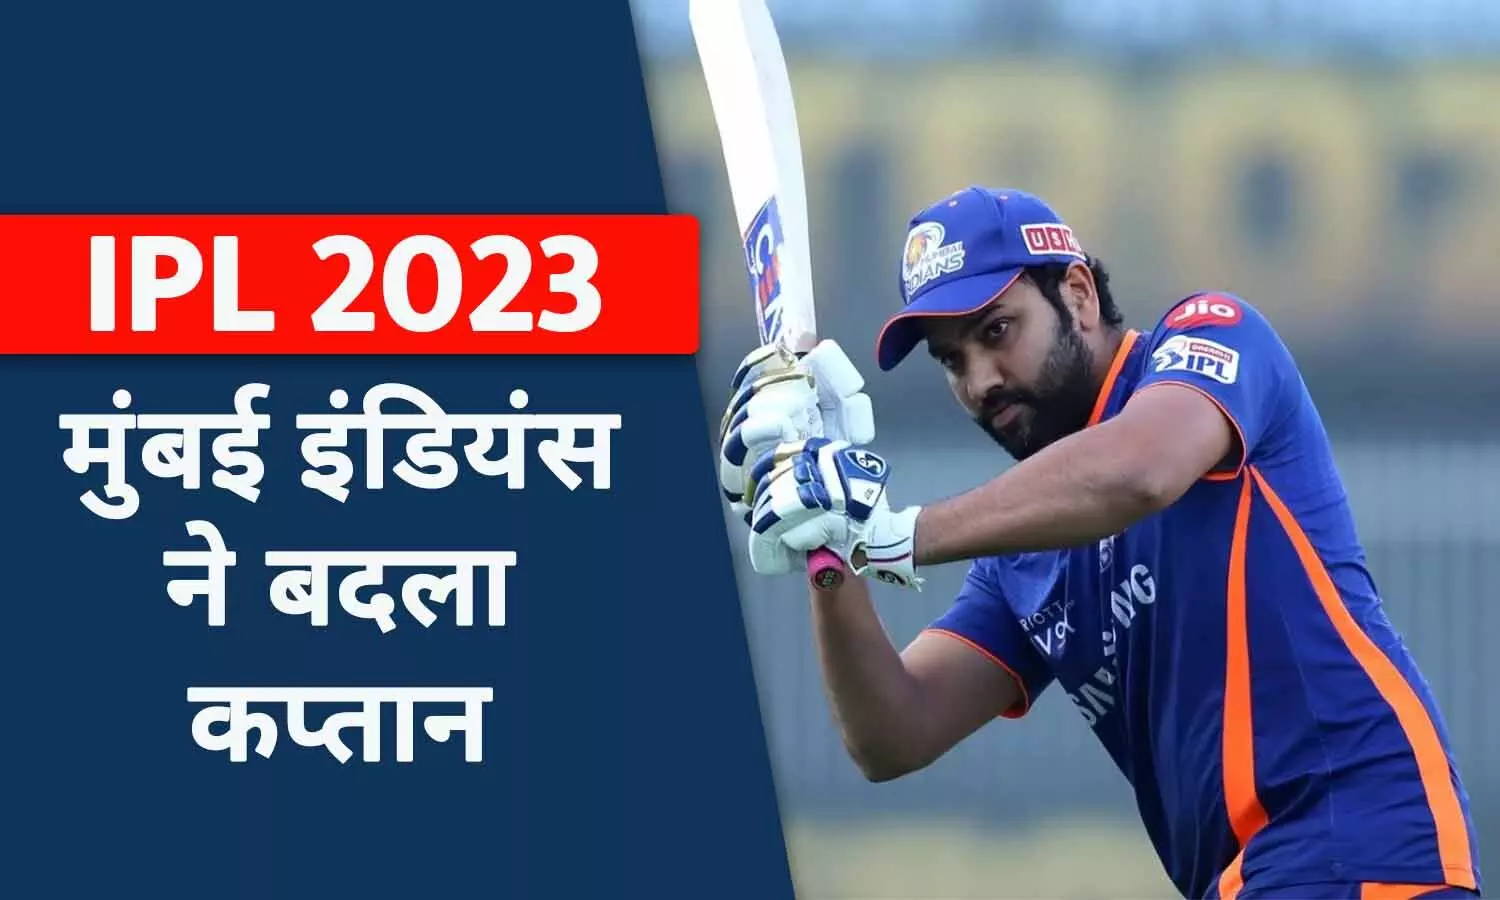 IPL 2023 से पहले MI के फैंस के लिए बुरी खबर: मुंबई इंडियंस ने बदला कप्तान, रोहित शर्मा बाहर